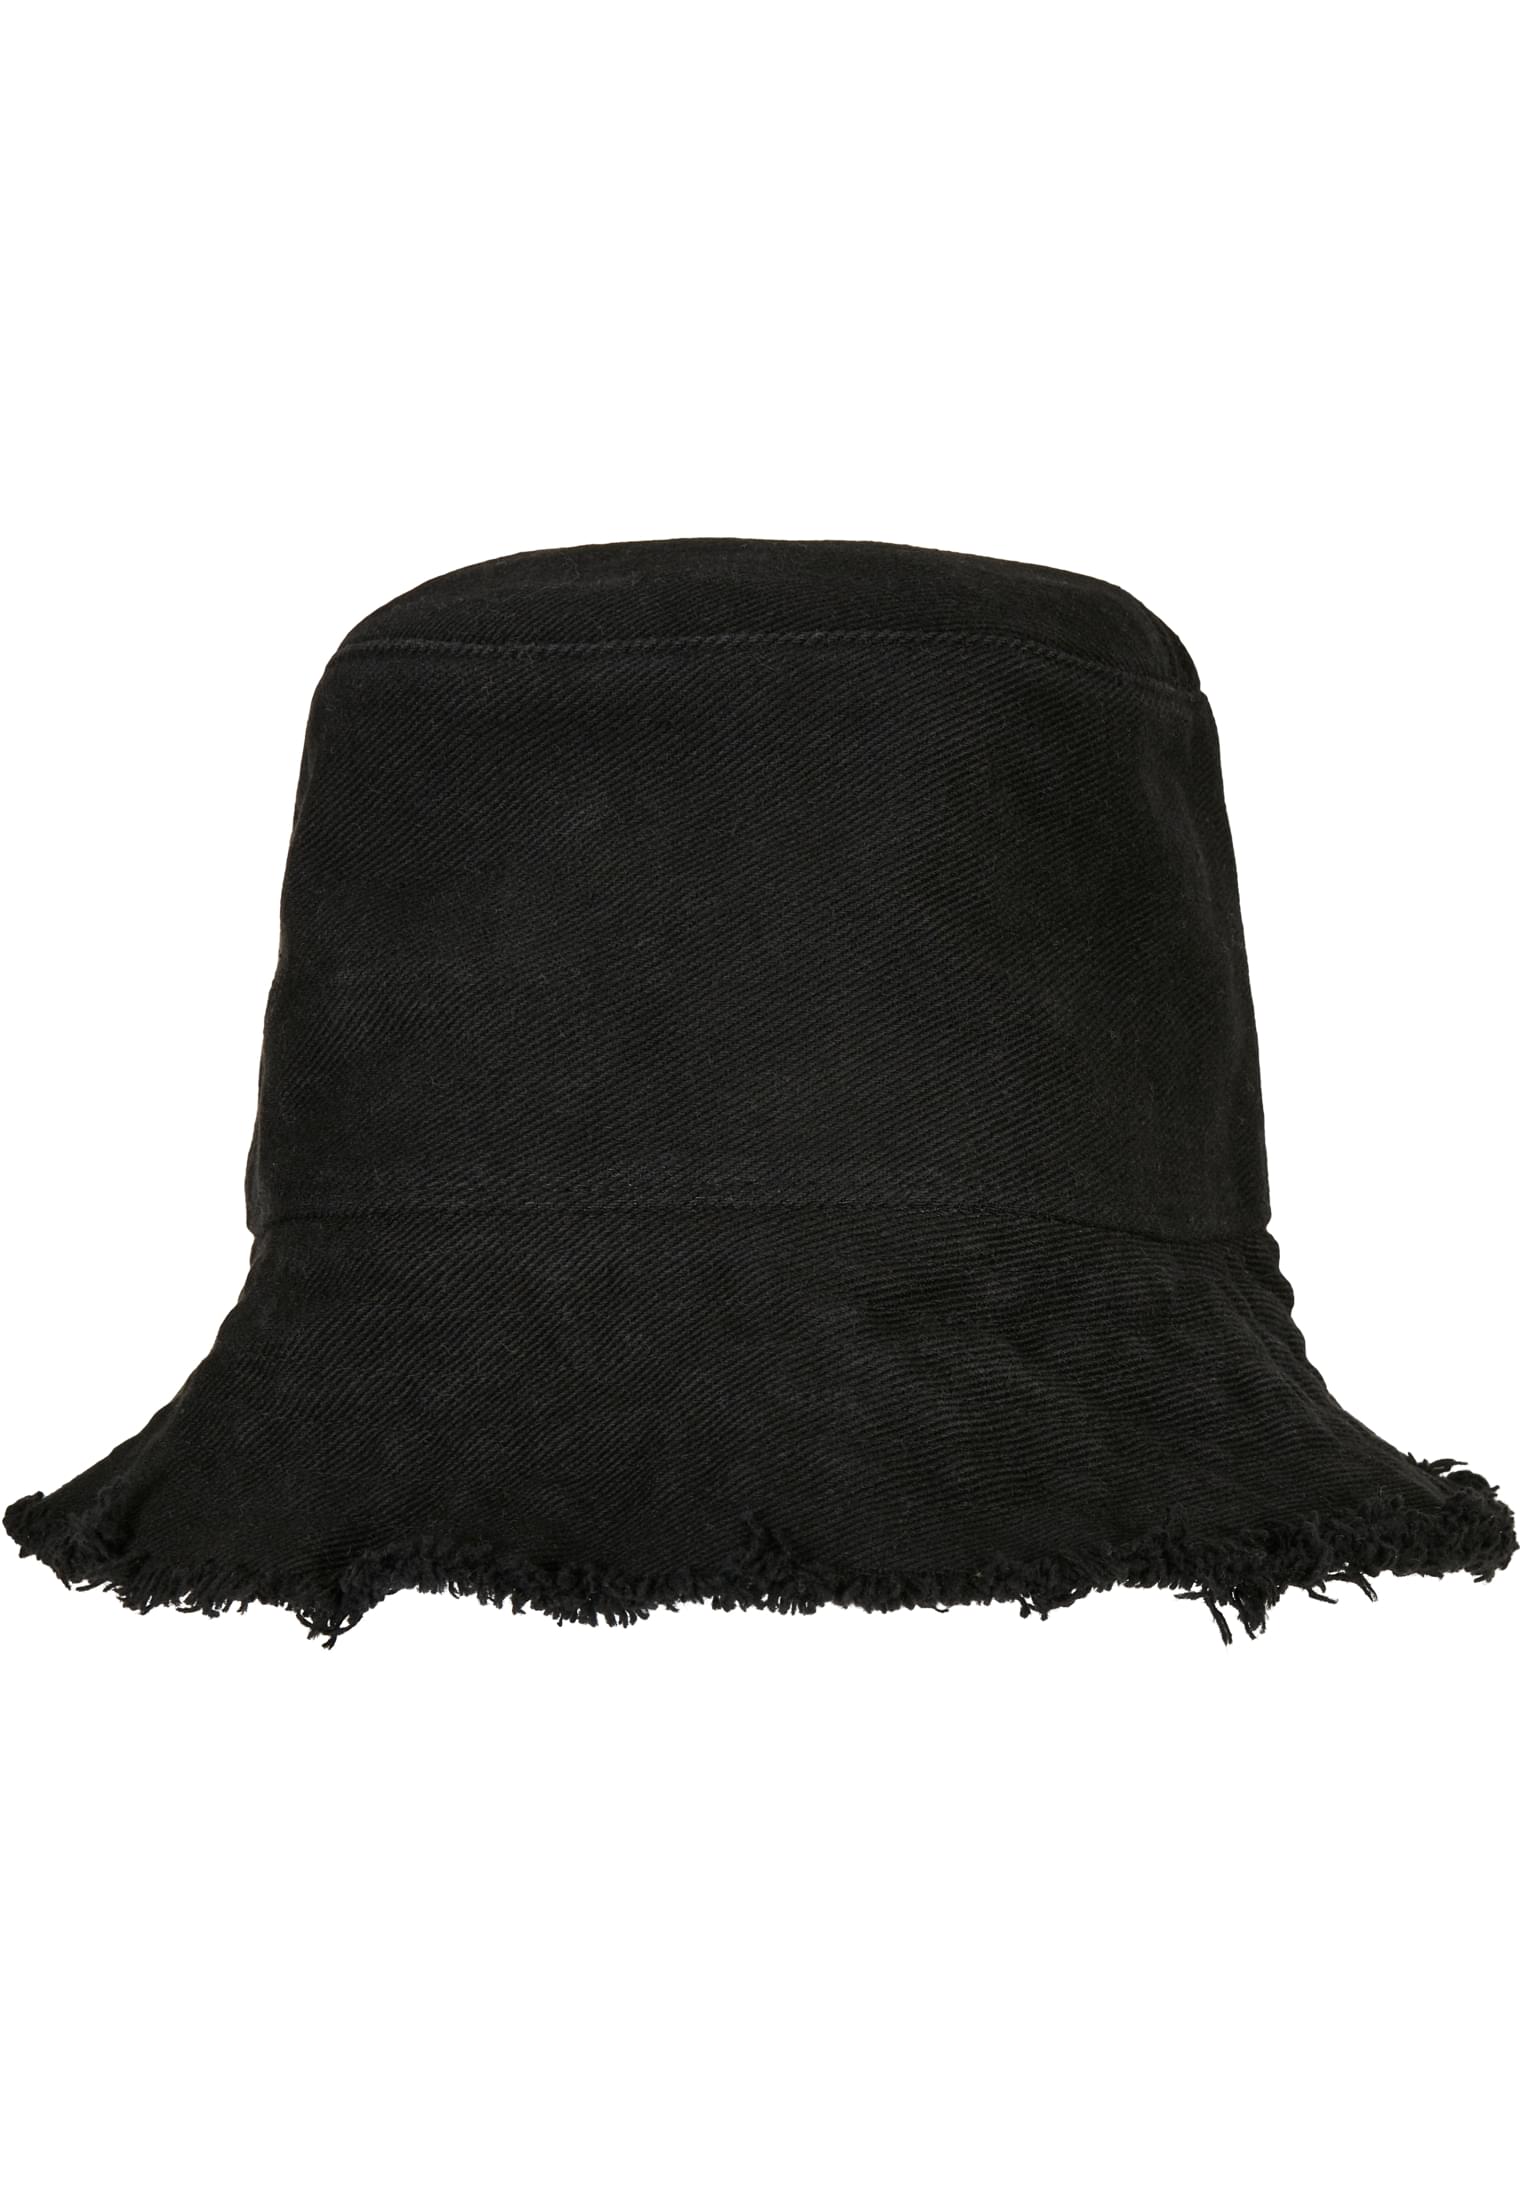 Bucket Hat Open Edge Bucket Hat in Farbe black